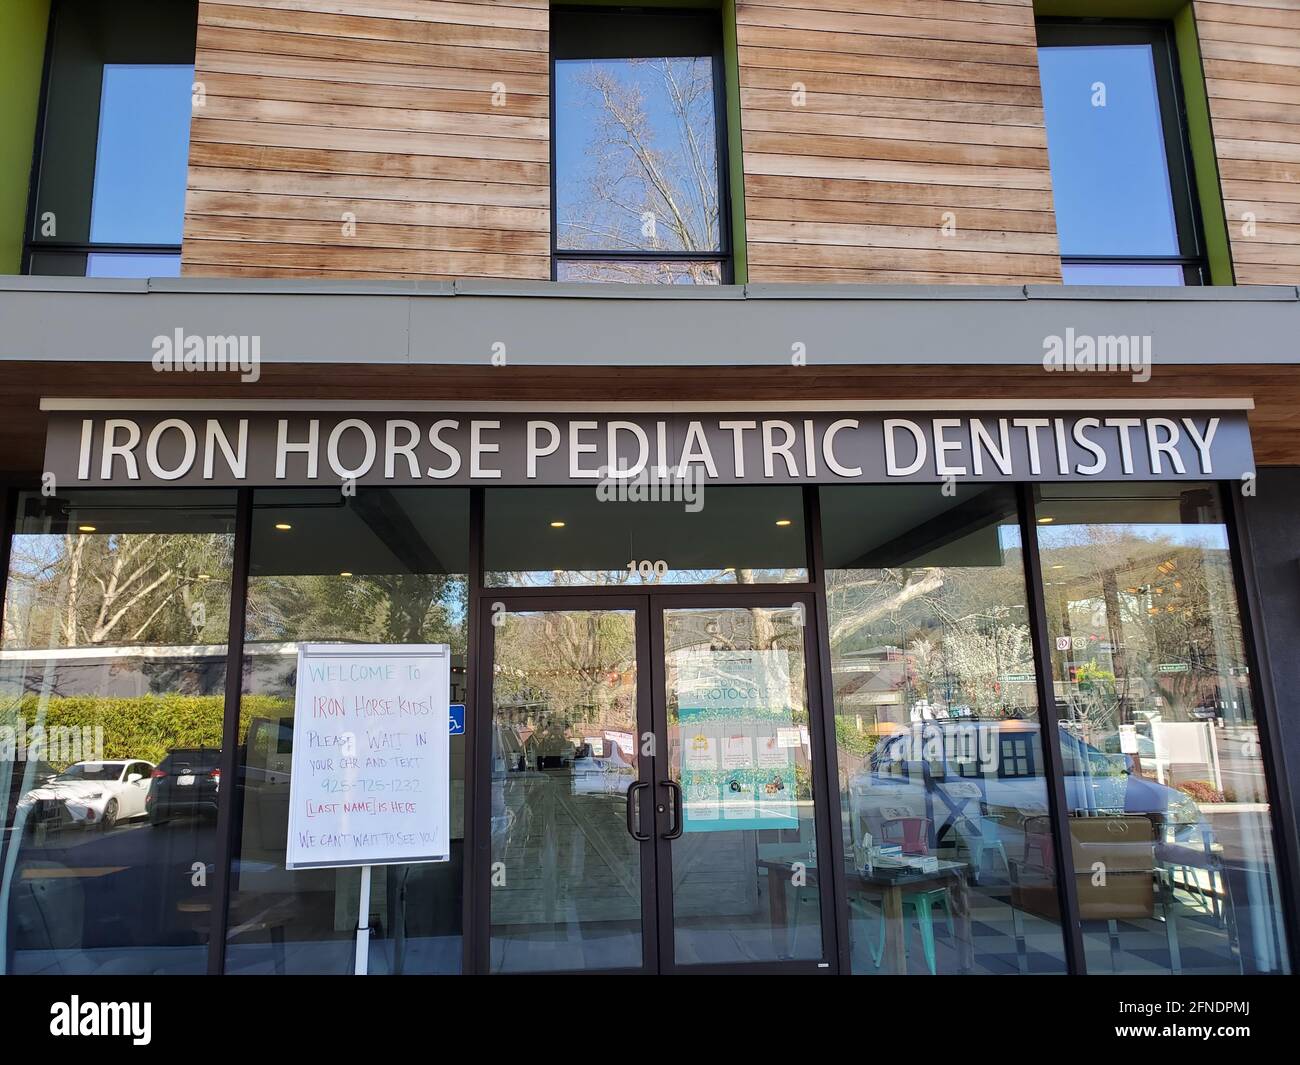 Foto der Fassade der pädiatrischen Zahnheilkunde von Iron Horse, mit einem COVID-19-ERA-Schild, das Patienten auffordert, in ihrem Auto zu warten und einen Text zu schreiben, um die Einreise zu erhalten, in Danville, Kalifornien, 20. März 2021. () Stockfoto